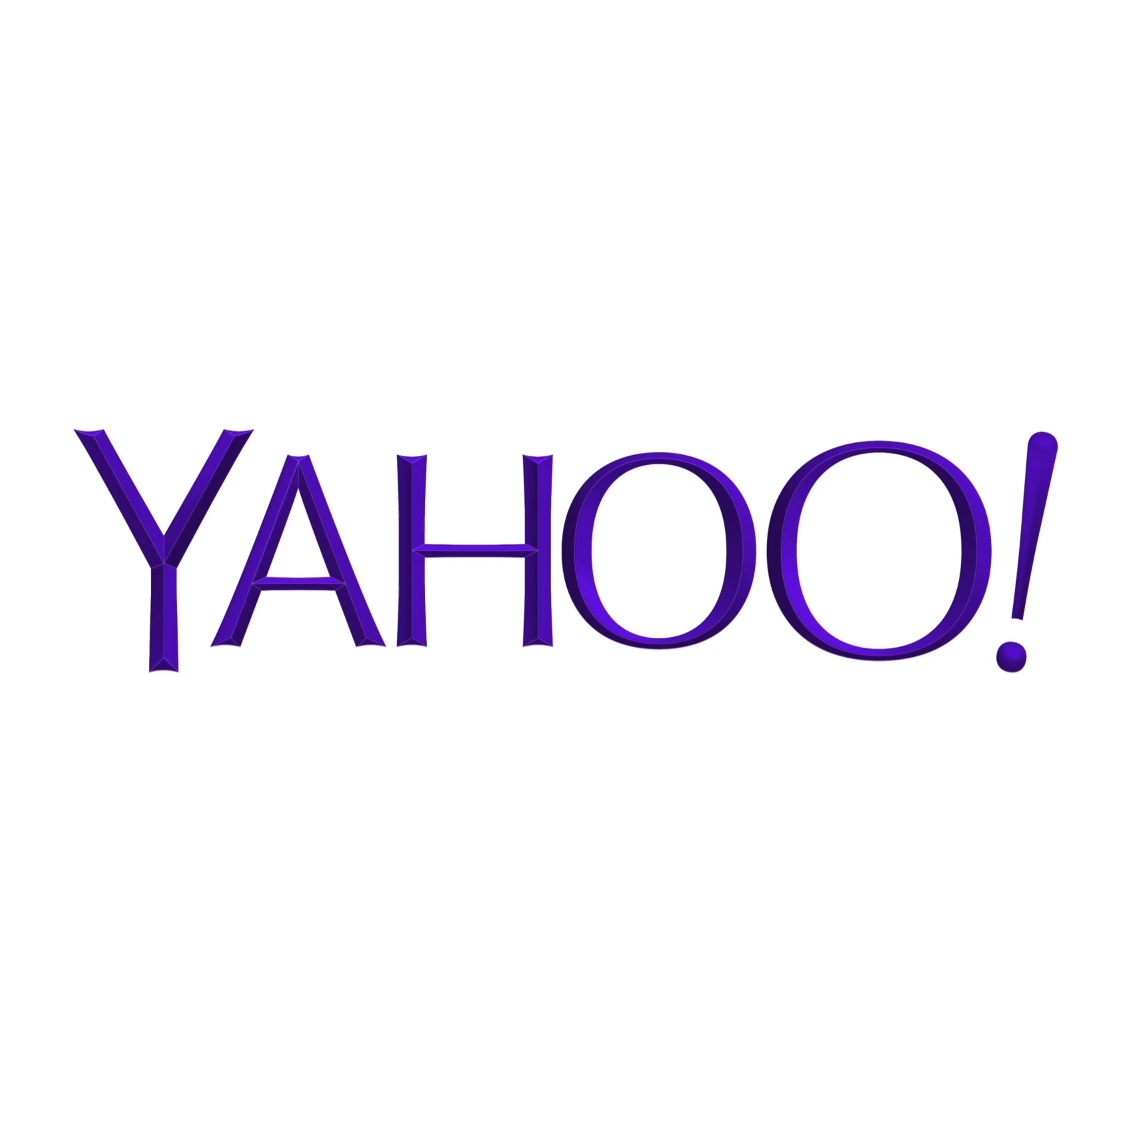 Yahoo! с ново лого 18 години след създаването си